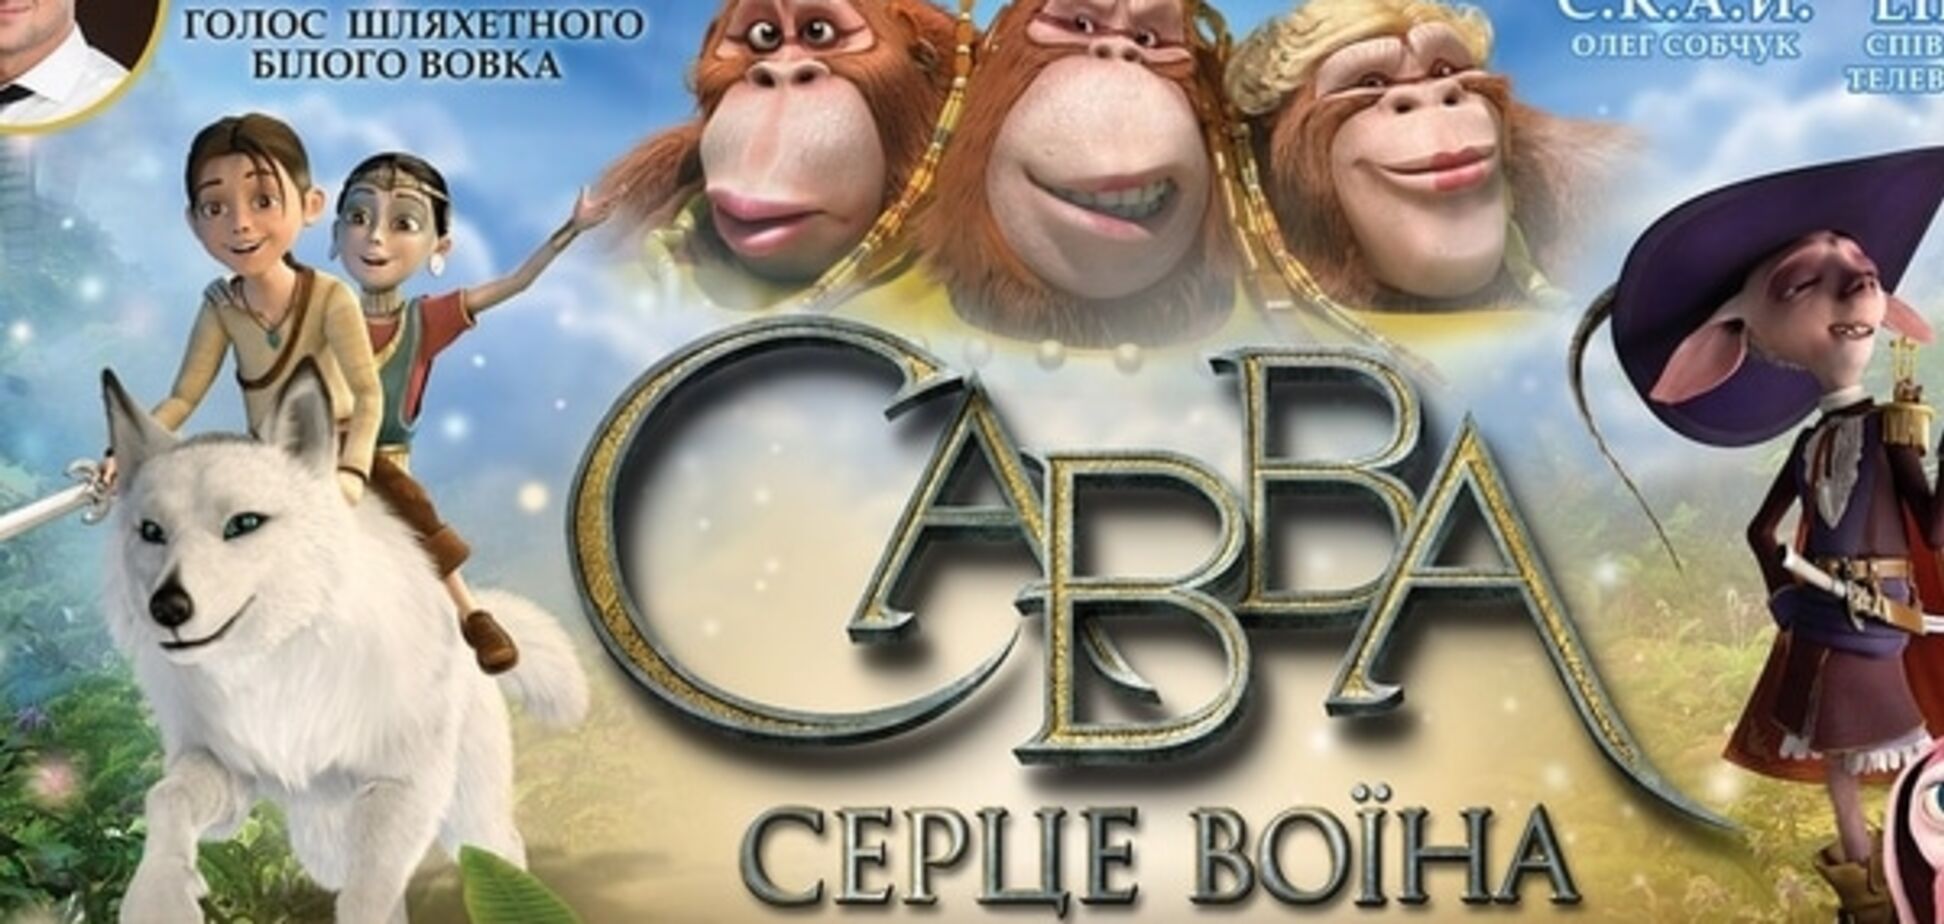 Украинские звезды проведут в кинотеатре семейный праздник анимации   